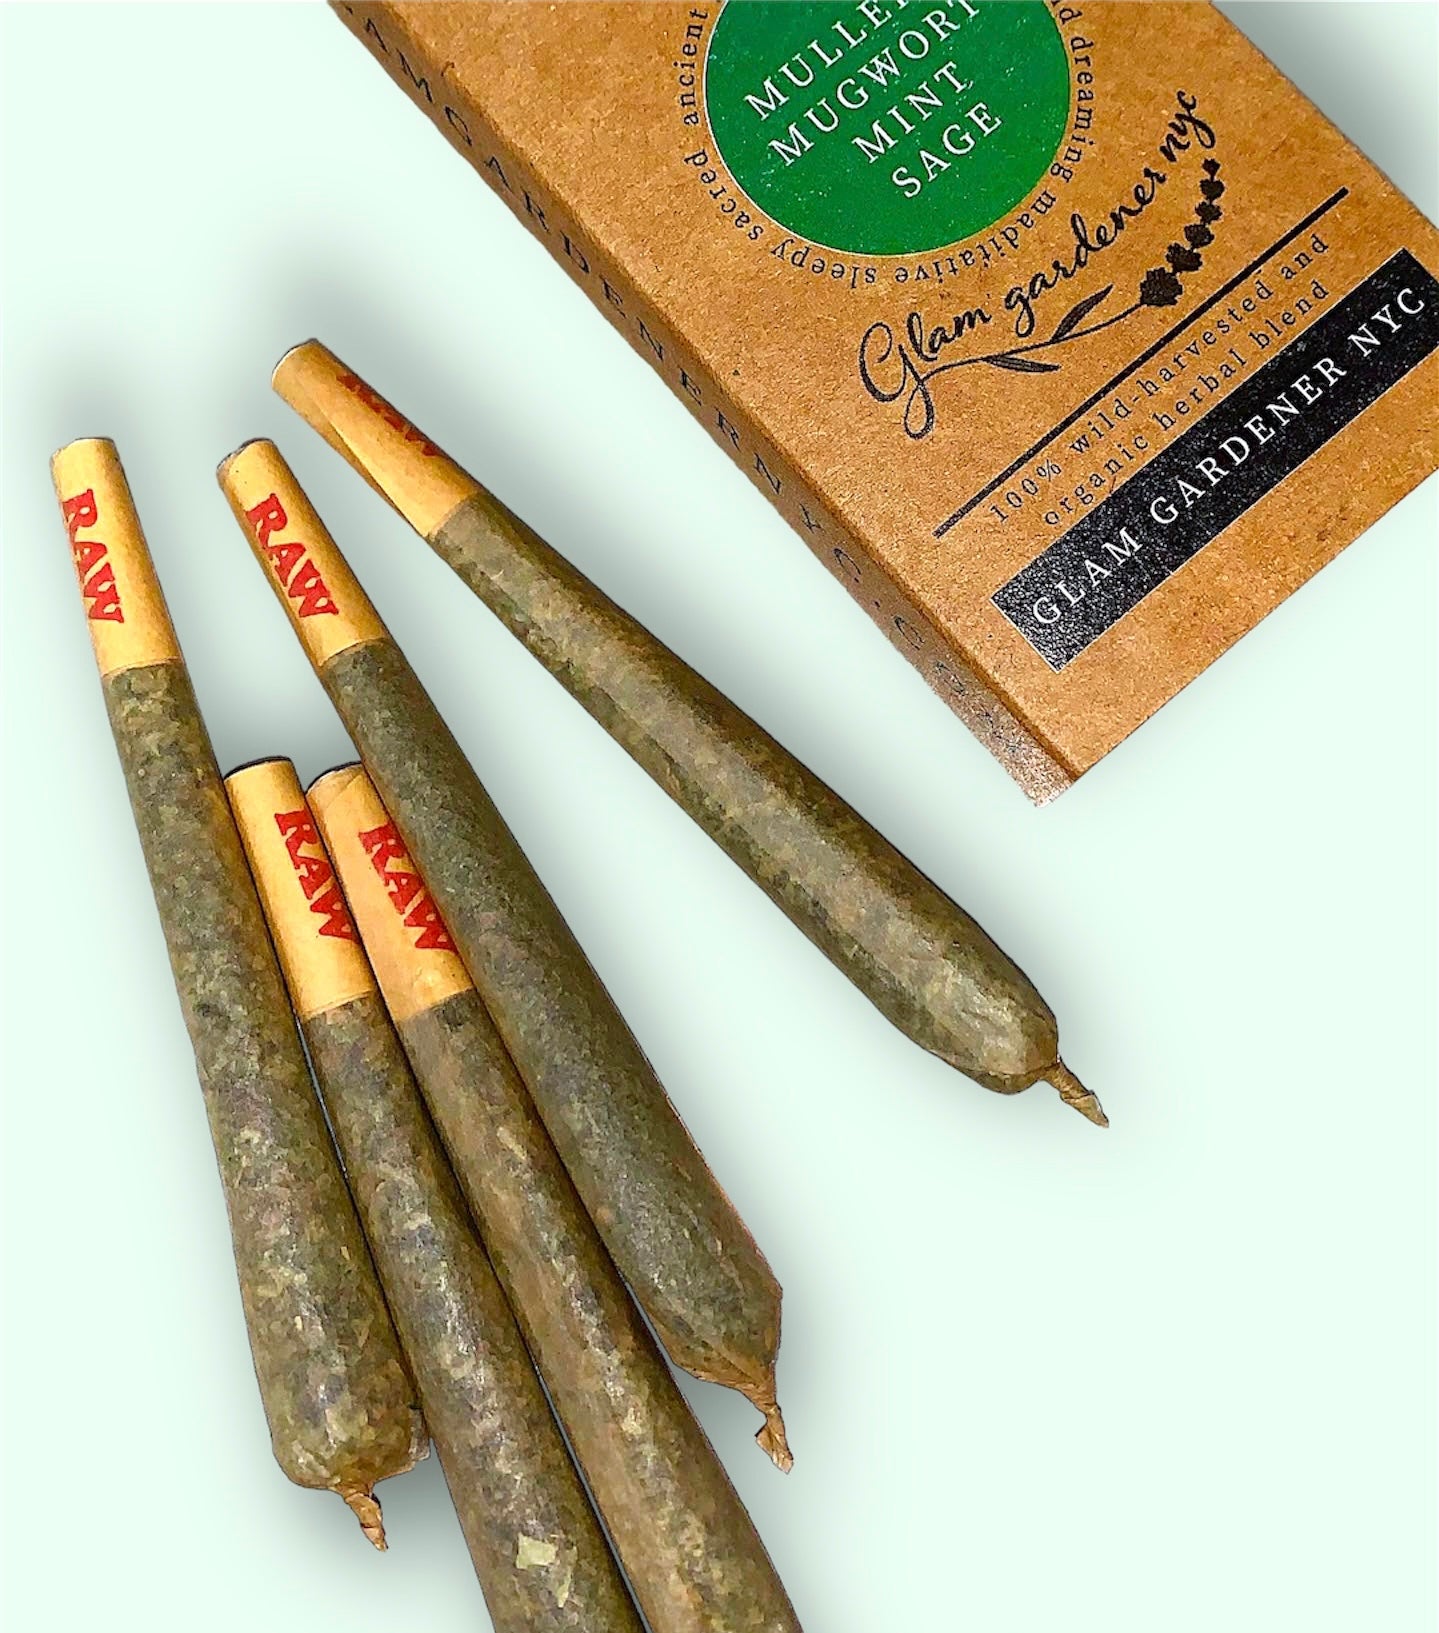 Herbal smoke by glam gardener nyc organic herbal smoking blend with mullein mugwort mint and sage 